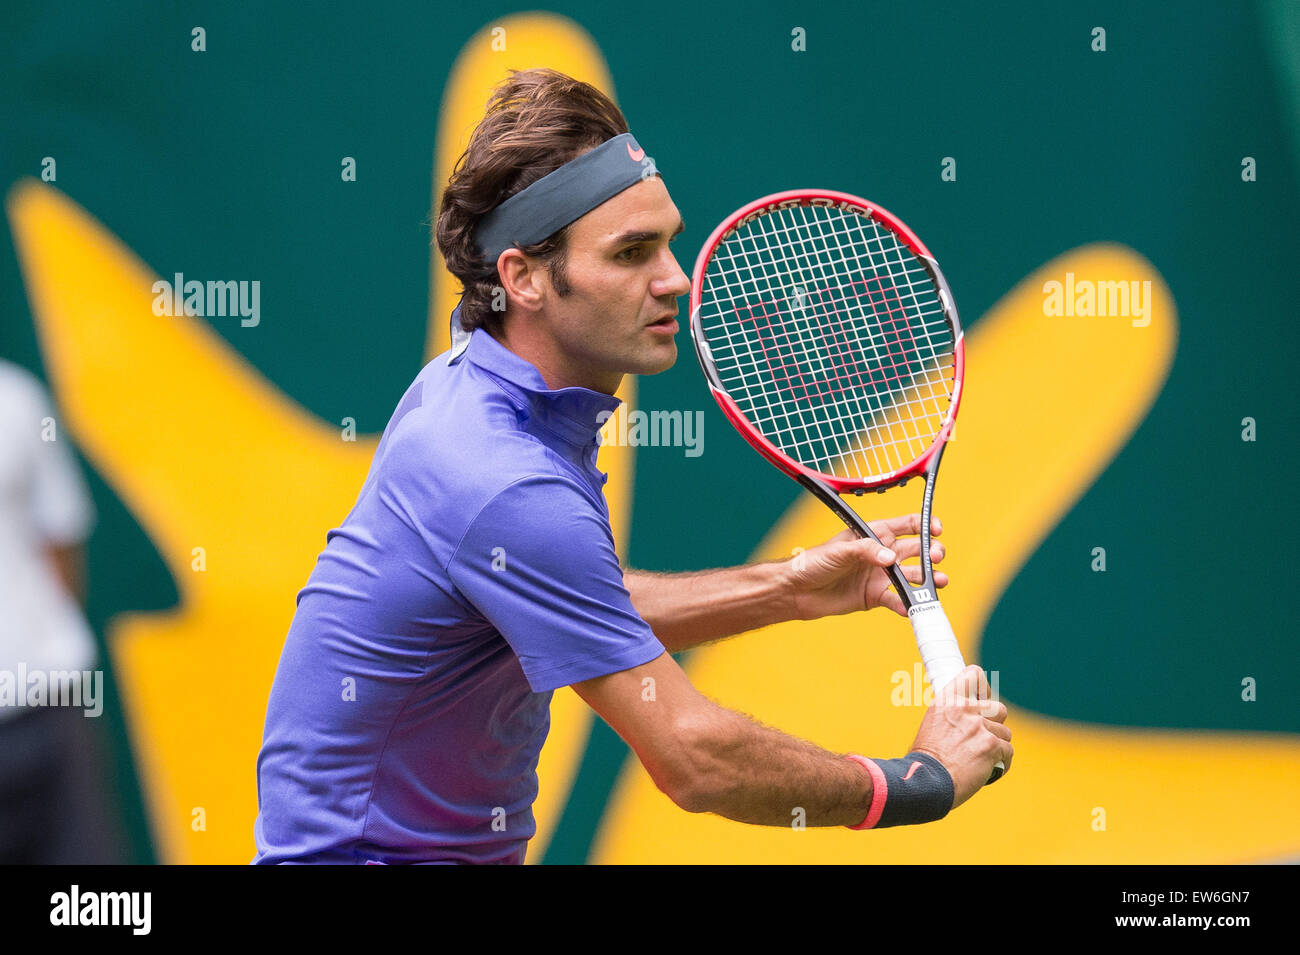 Halle, Alemania. 17 de junio de 2015. Roger Federer de Suiza en acción durante el partido de octavos de final contra Ernests Gulbis de Letonia durante el torneo de tenis de la ATP en Halle, Alemania, 17 de junio de 2015. Foto: MAJA HITIJ/dpa/Alamy Live News Foto de stock